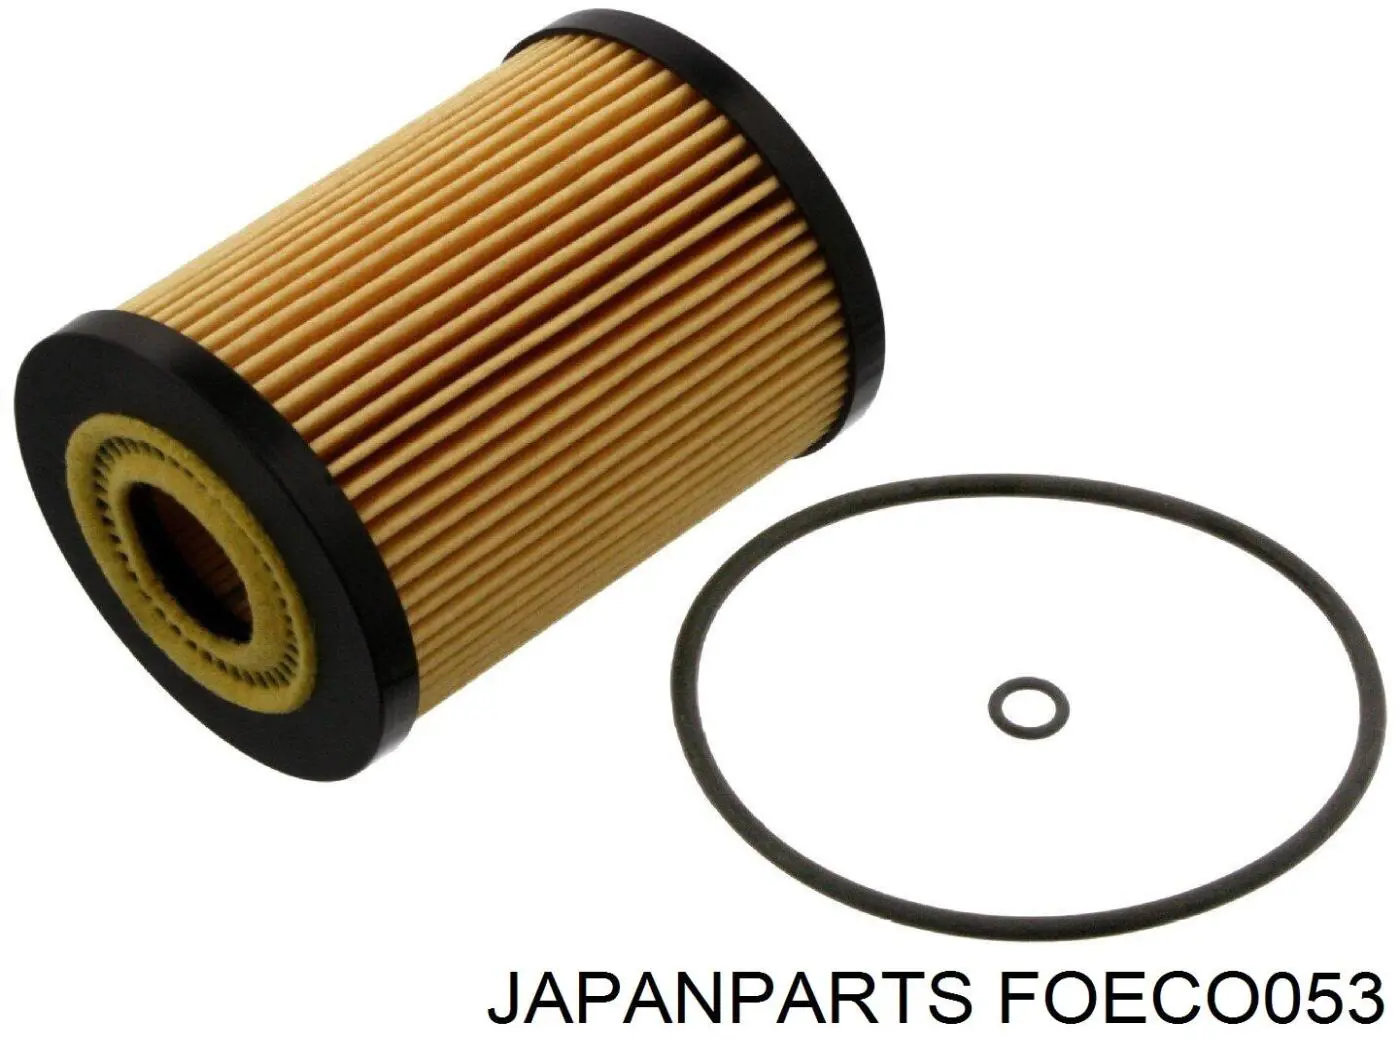 FOECO053 Japan Parts filtro de aceite